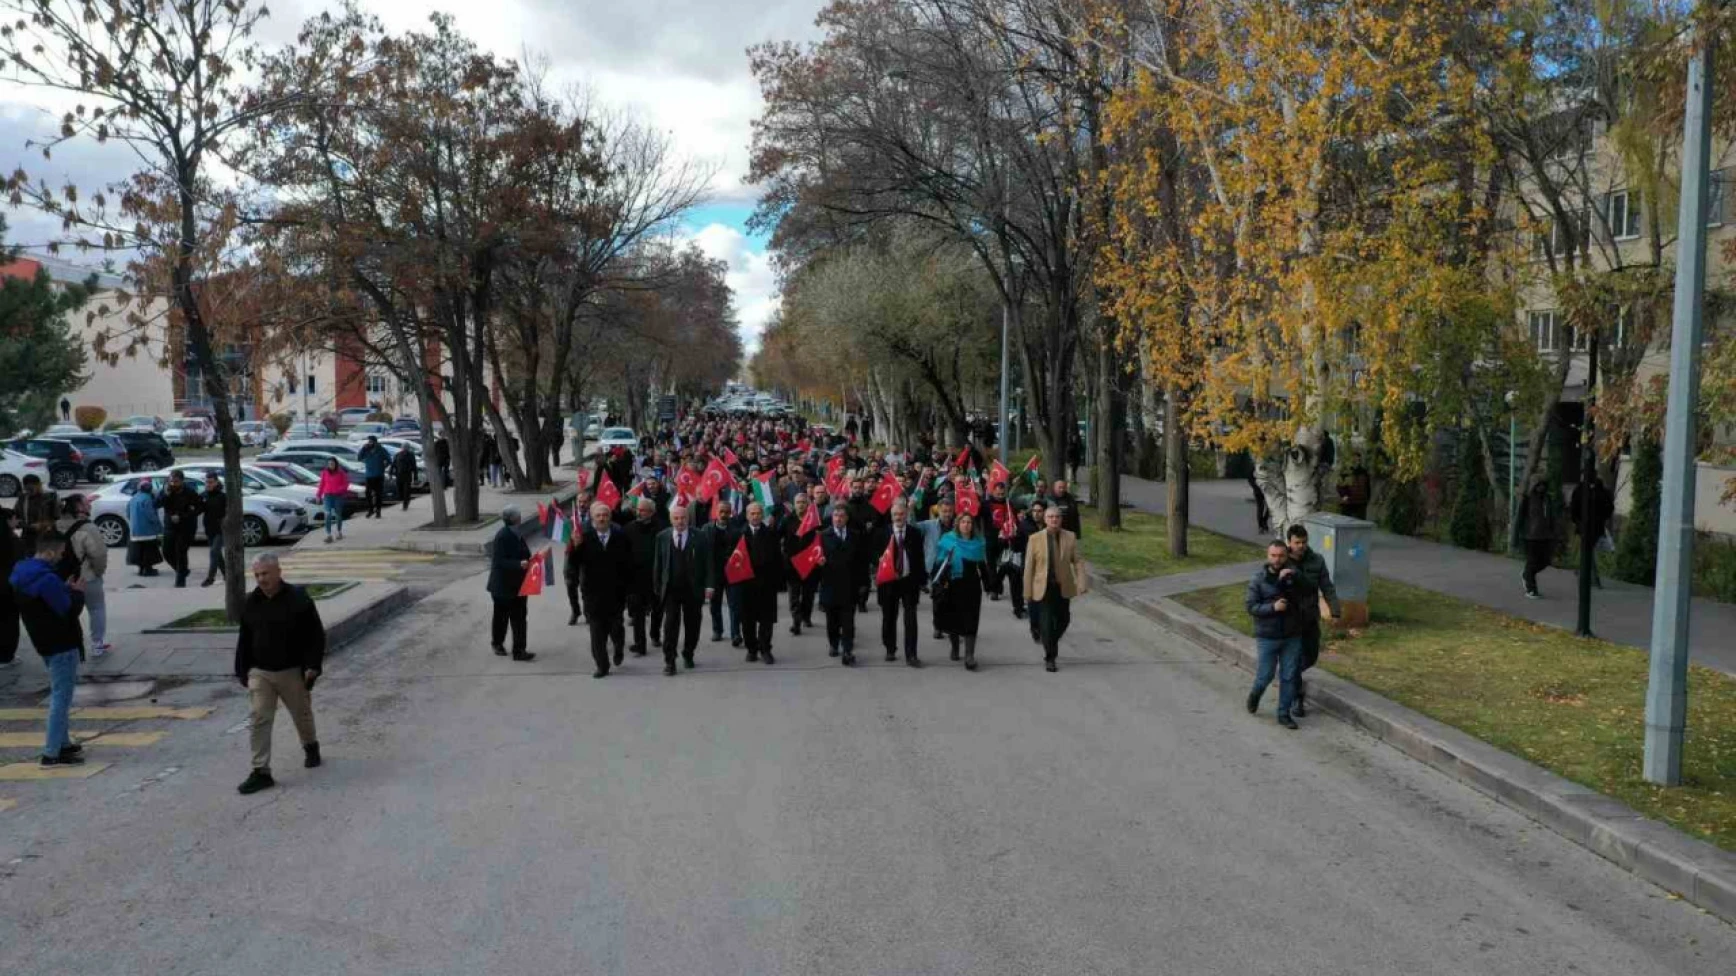 Erzurum'da öğrenci ve akademisyenler Filistin için yürüdü